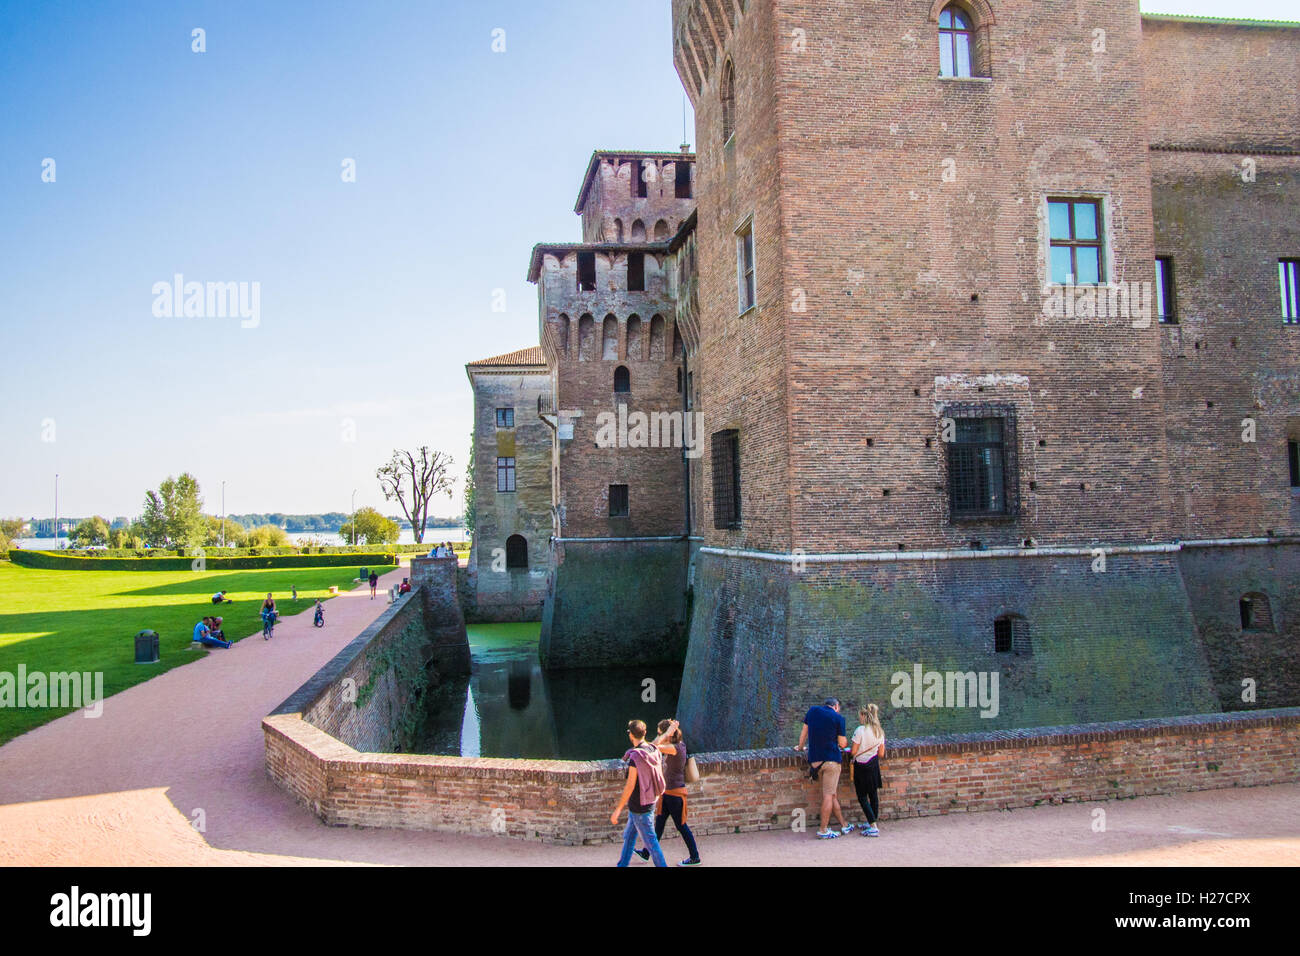 Castello San Giorgio (Château de Saint Georges), Mantoue (Mantova), Lombardie, Italie. La rivière Muncio est sur la gauche. Banque D'Images